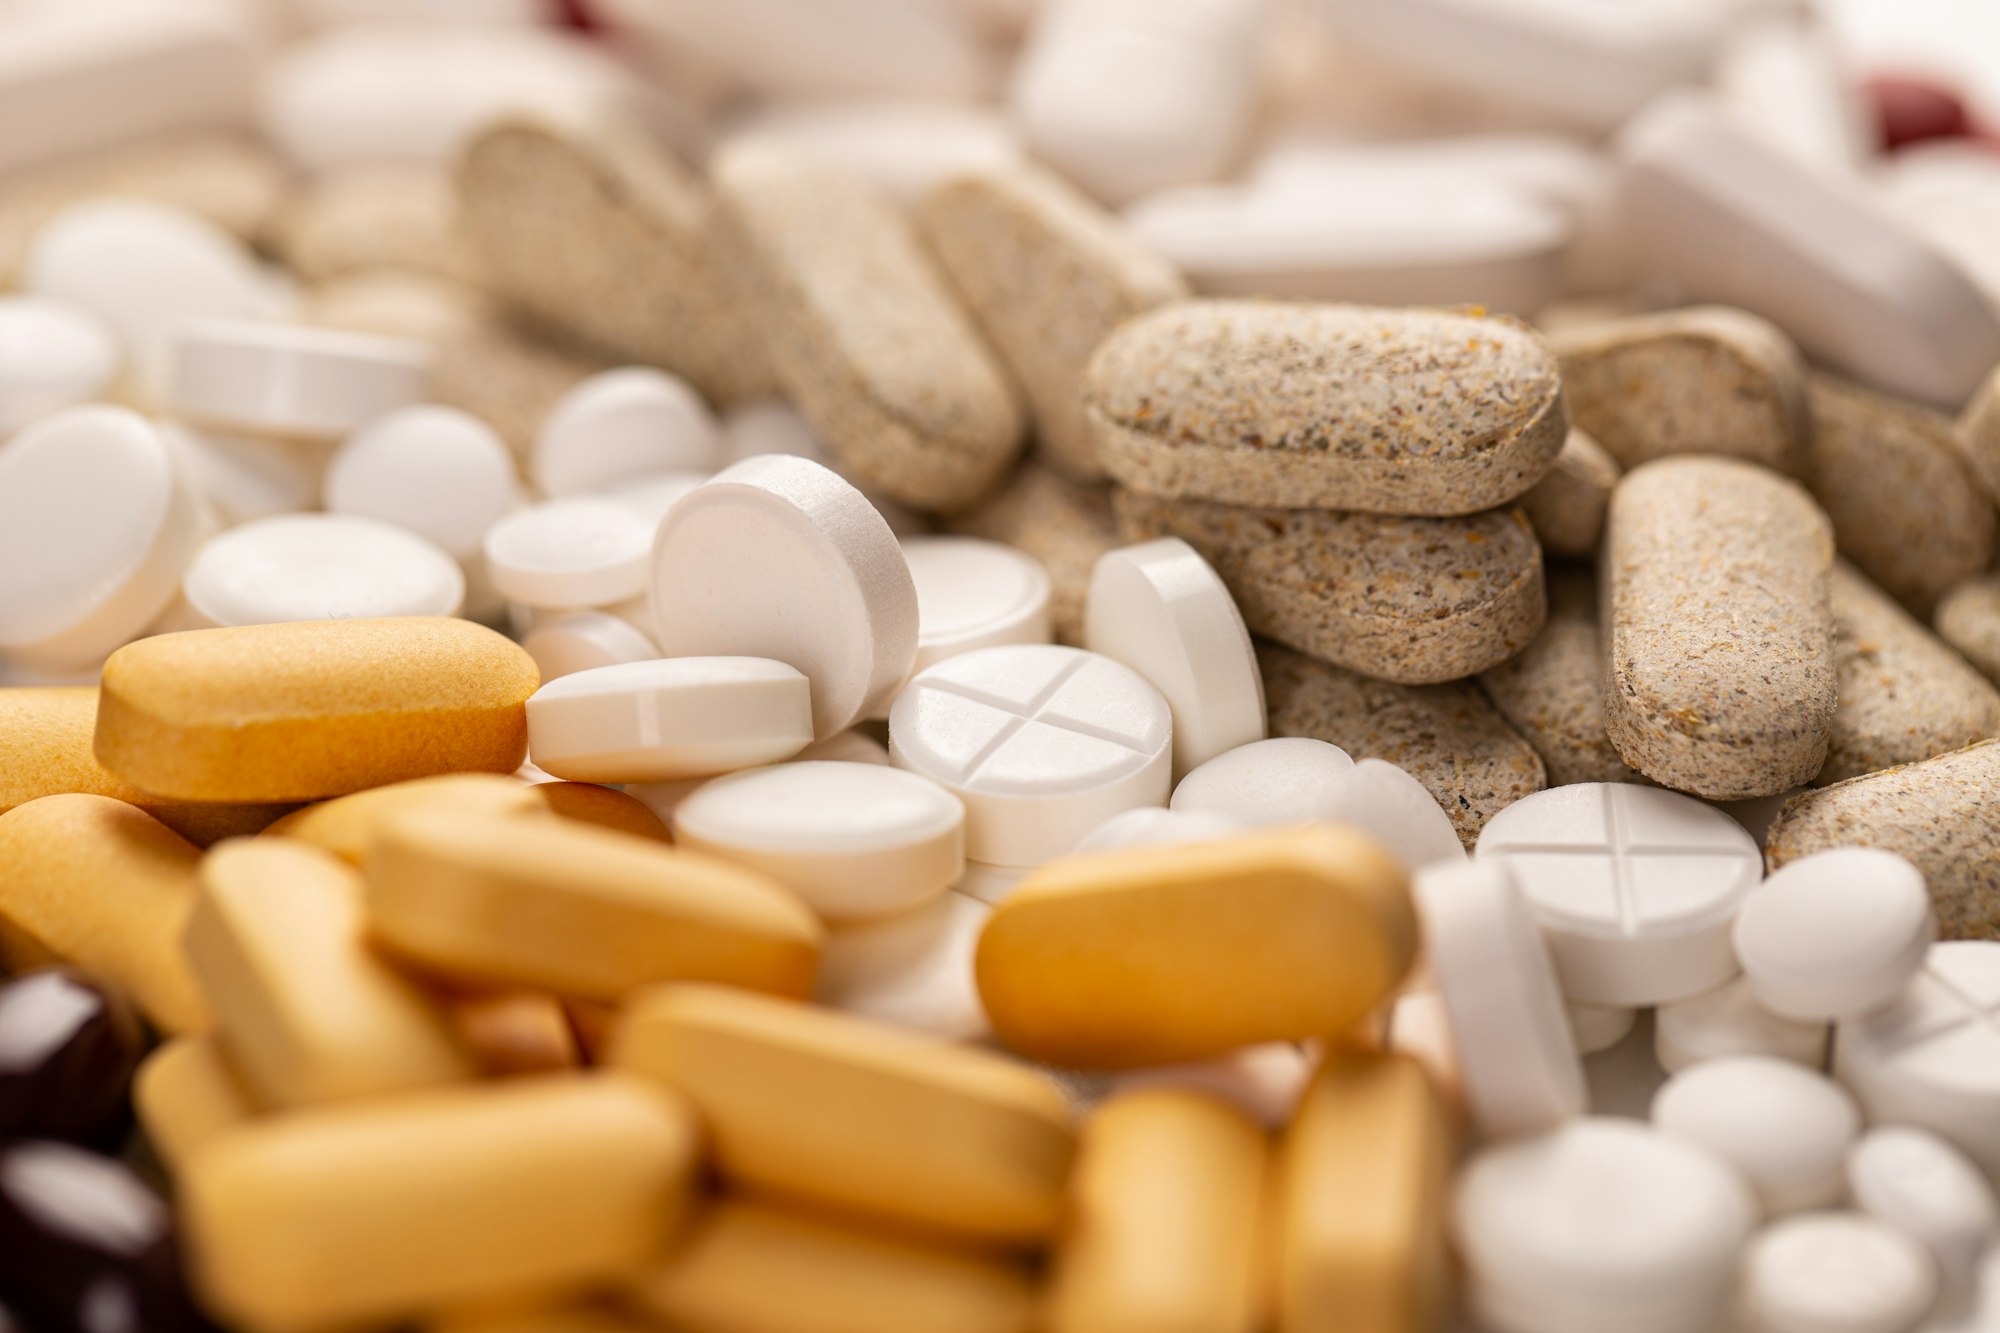 Assorted pharmaceutical medicine pills